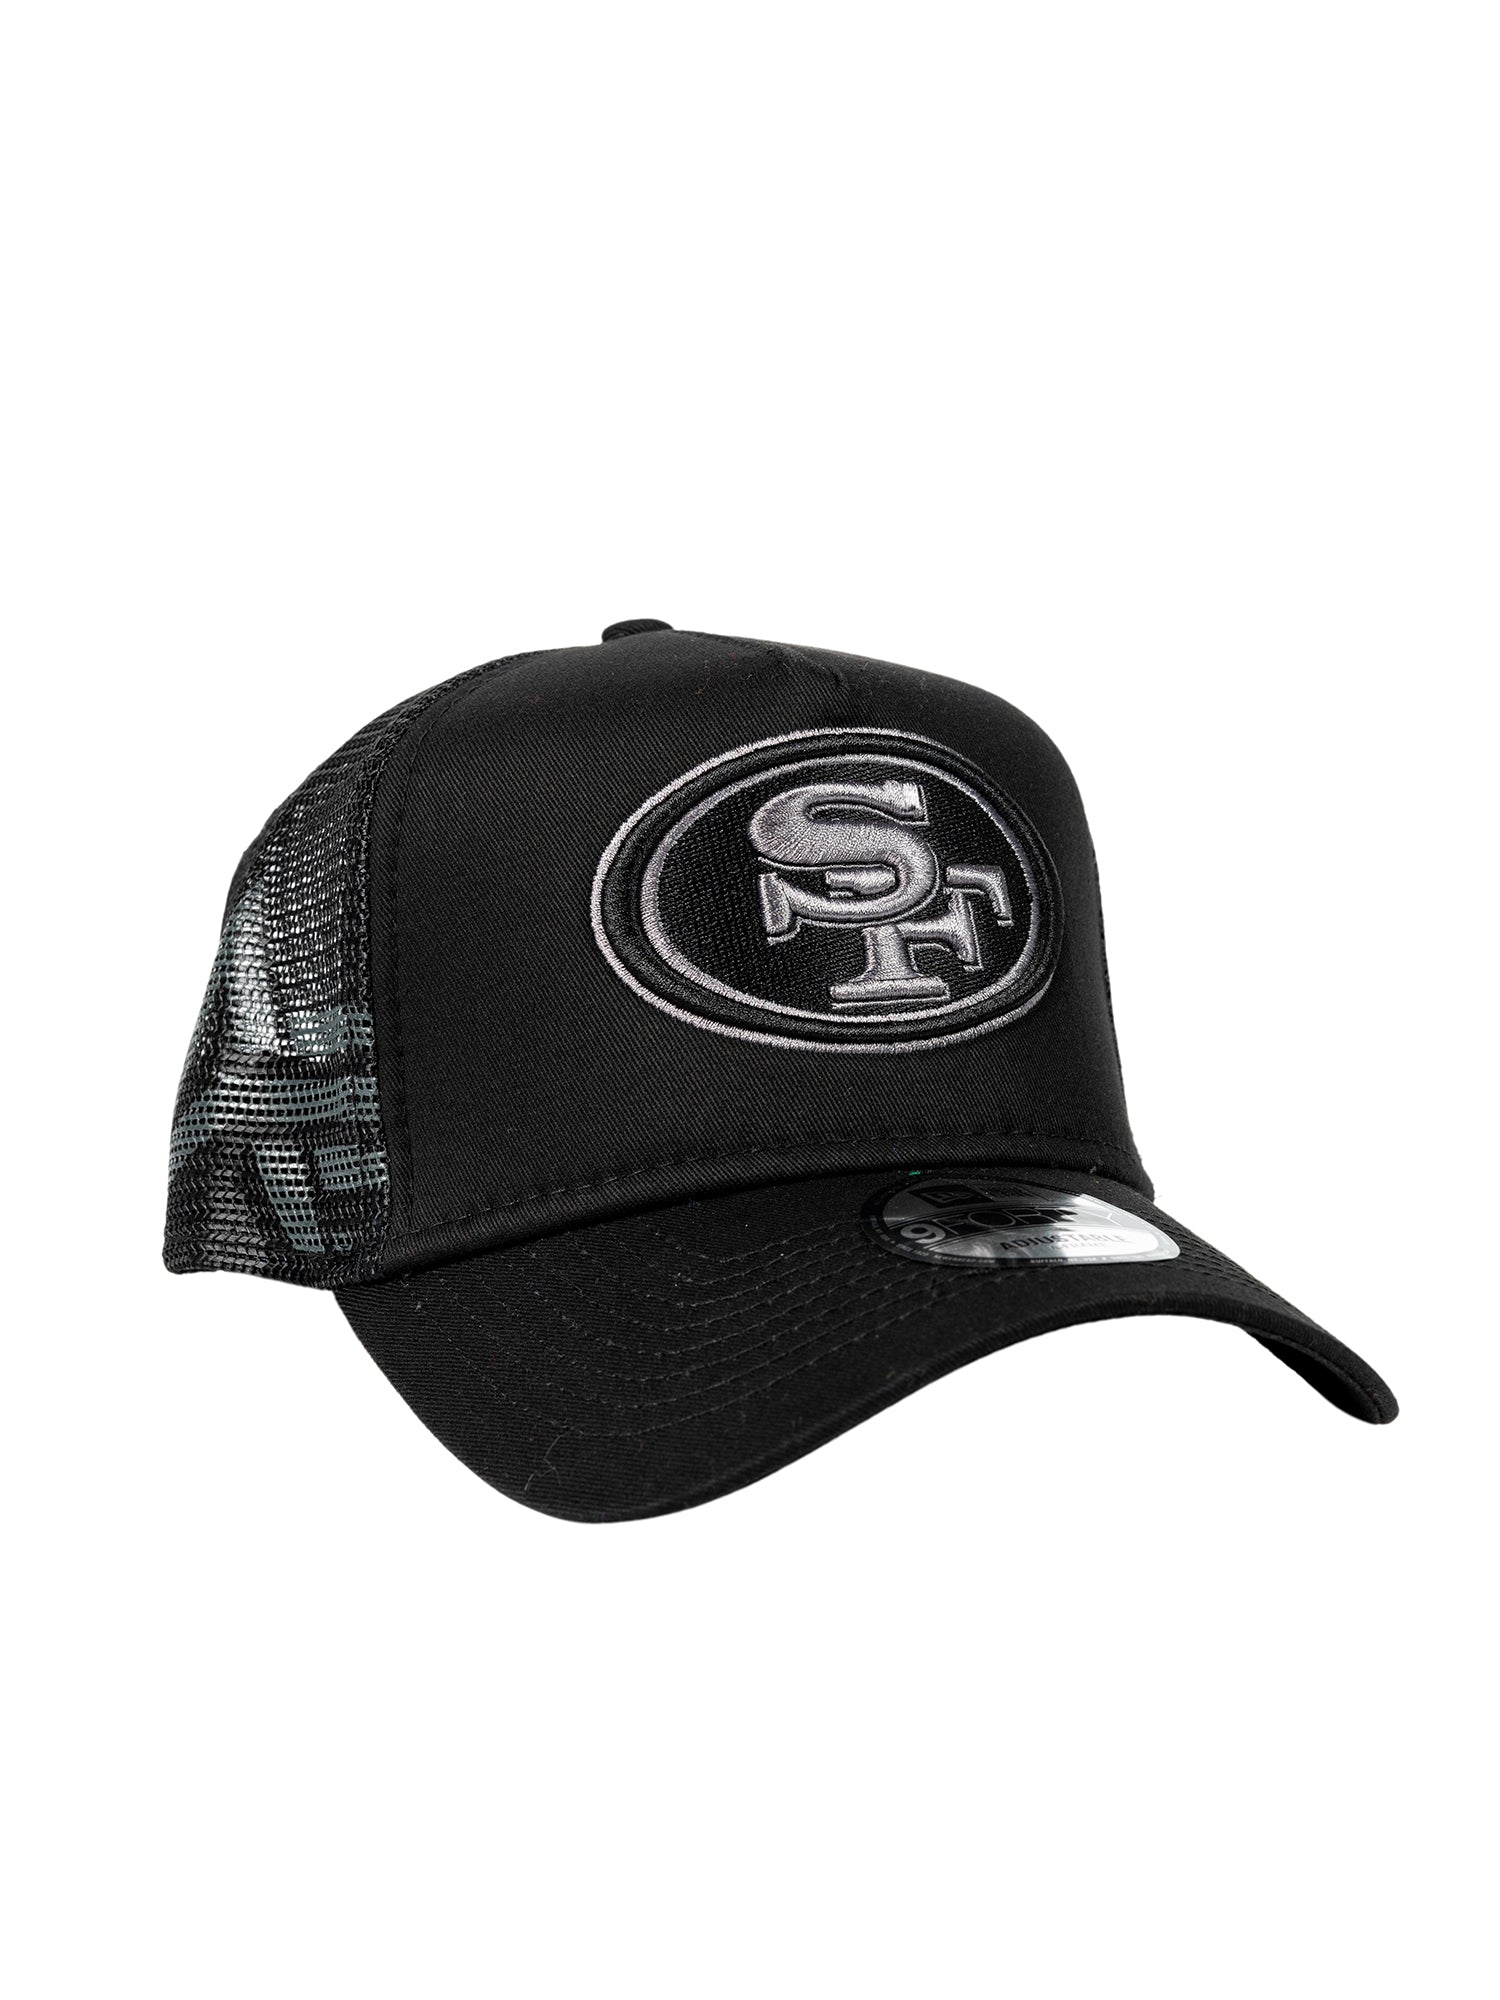 SAN FRANCISCO 49ERS X ALPHA X NEW ERA 940 CAP